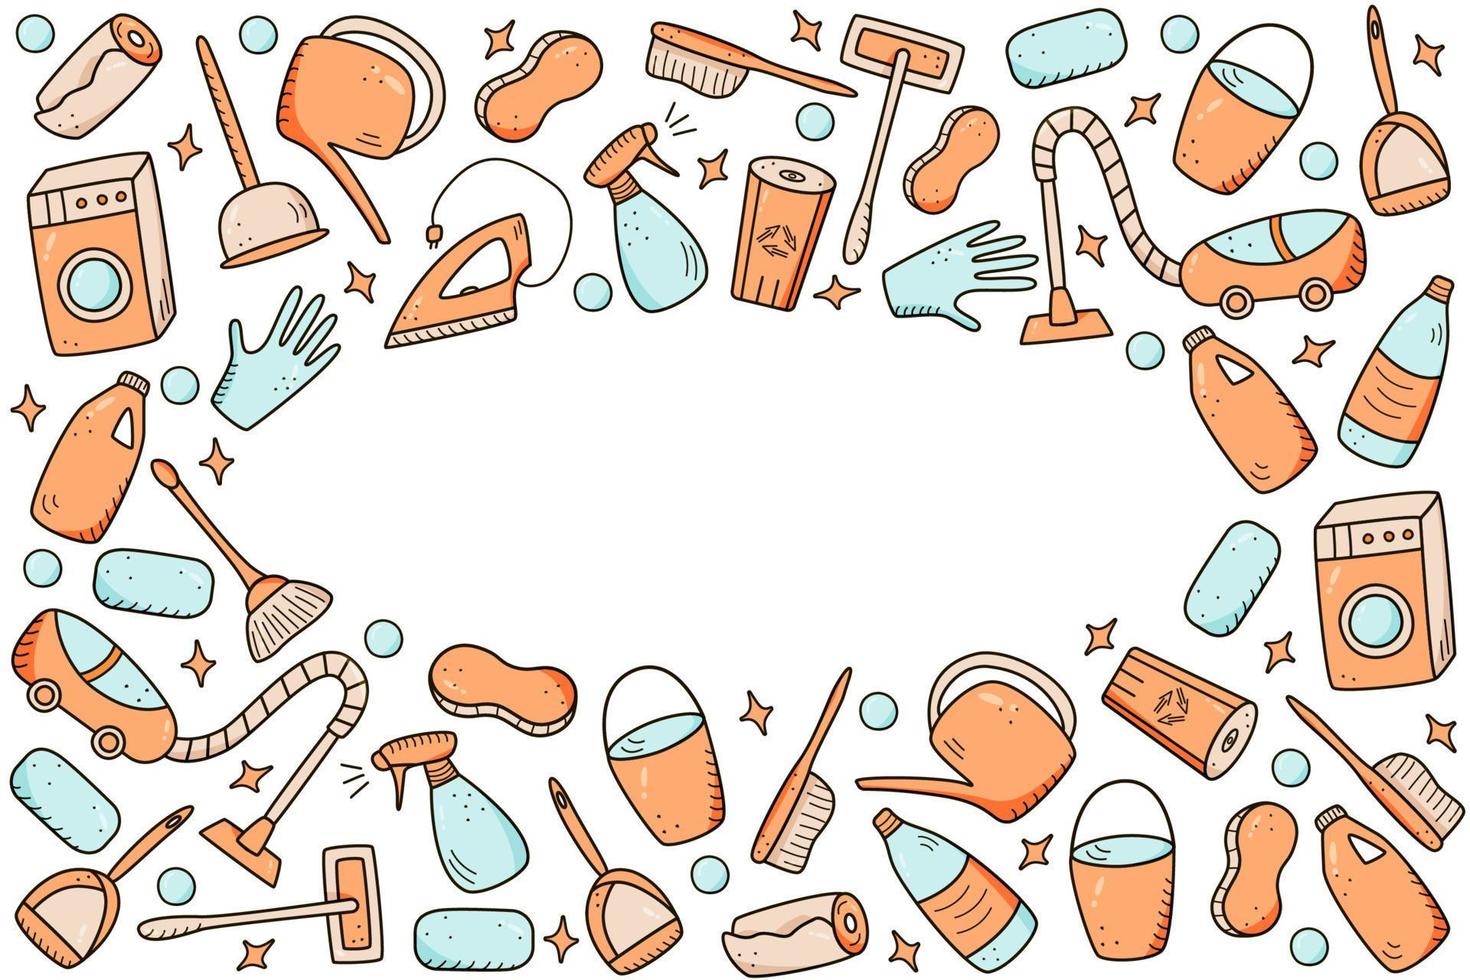 elementi di pulizia vettoriali in stile doodle. una serie di disegni di prodotti e articoli per la pulizia. kit per il lavaggio della stanza